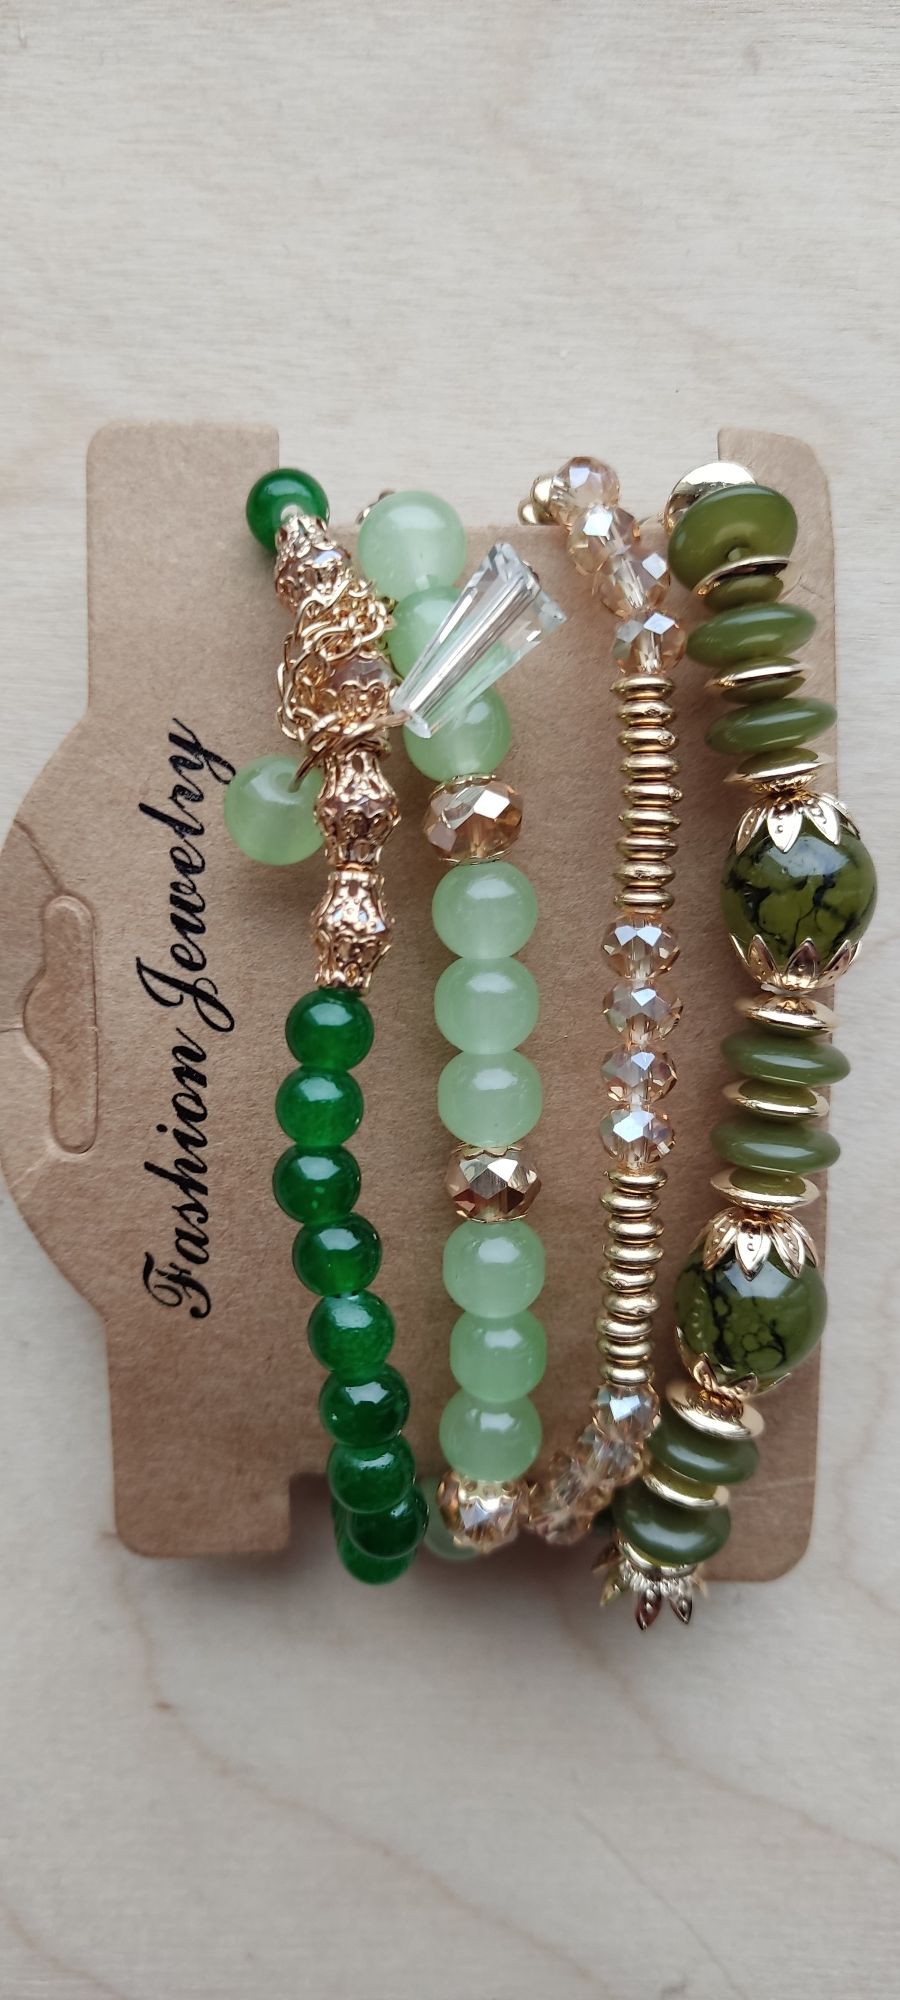 Nowe 4 sztuki bransoletki koraliki zielone złote Fashion Jewelry